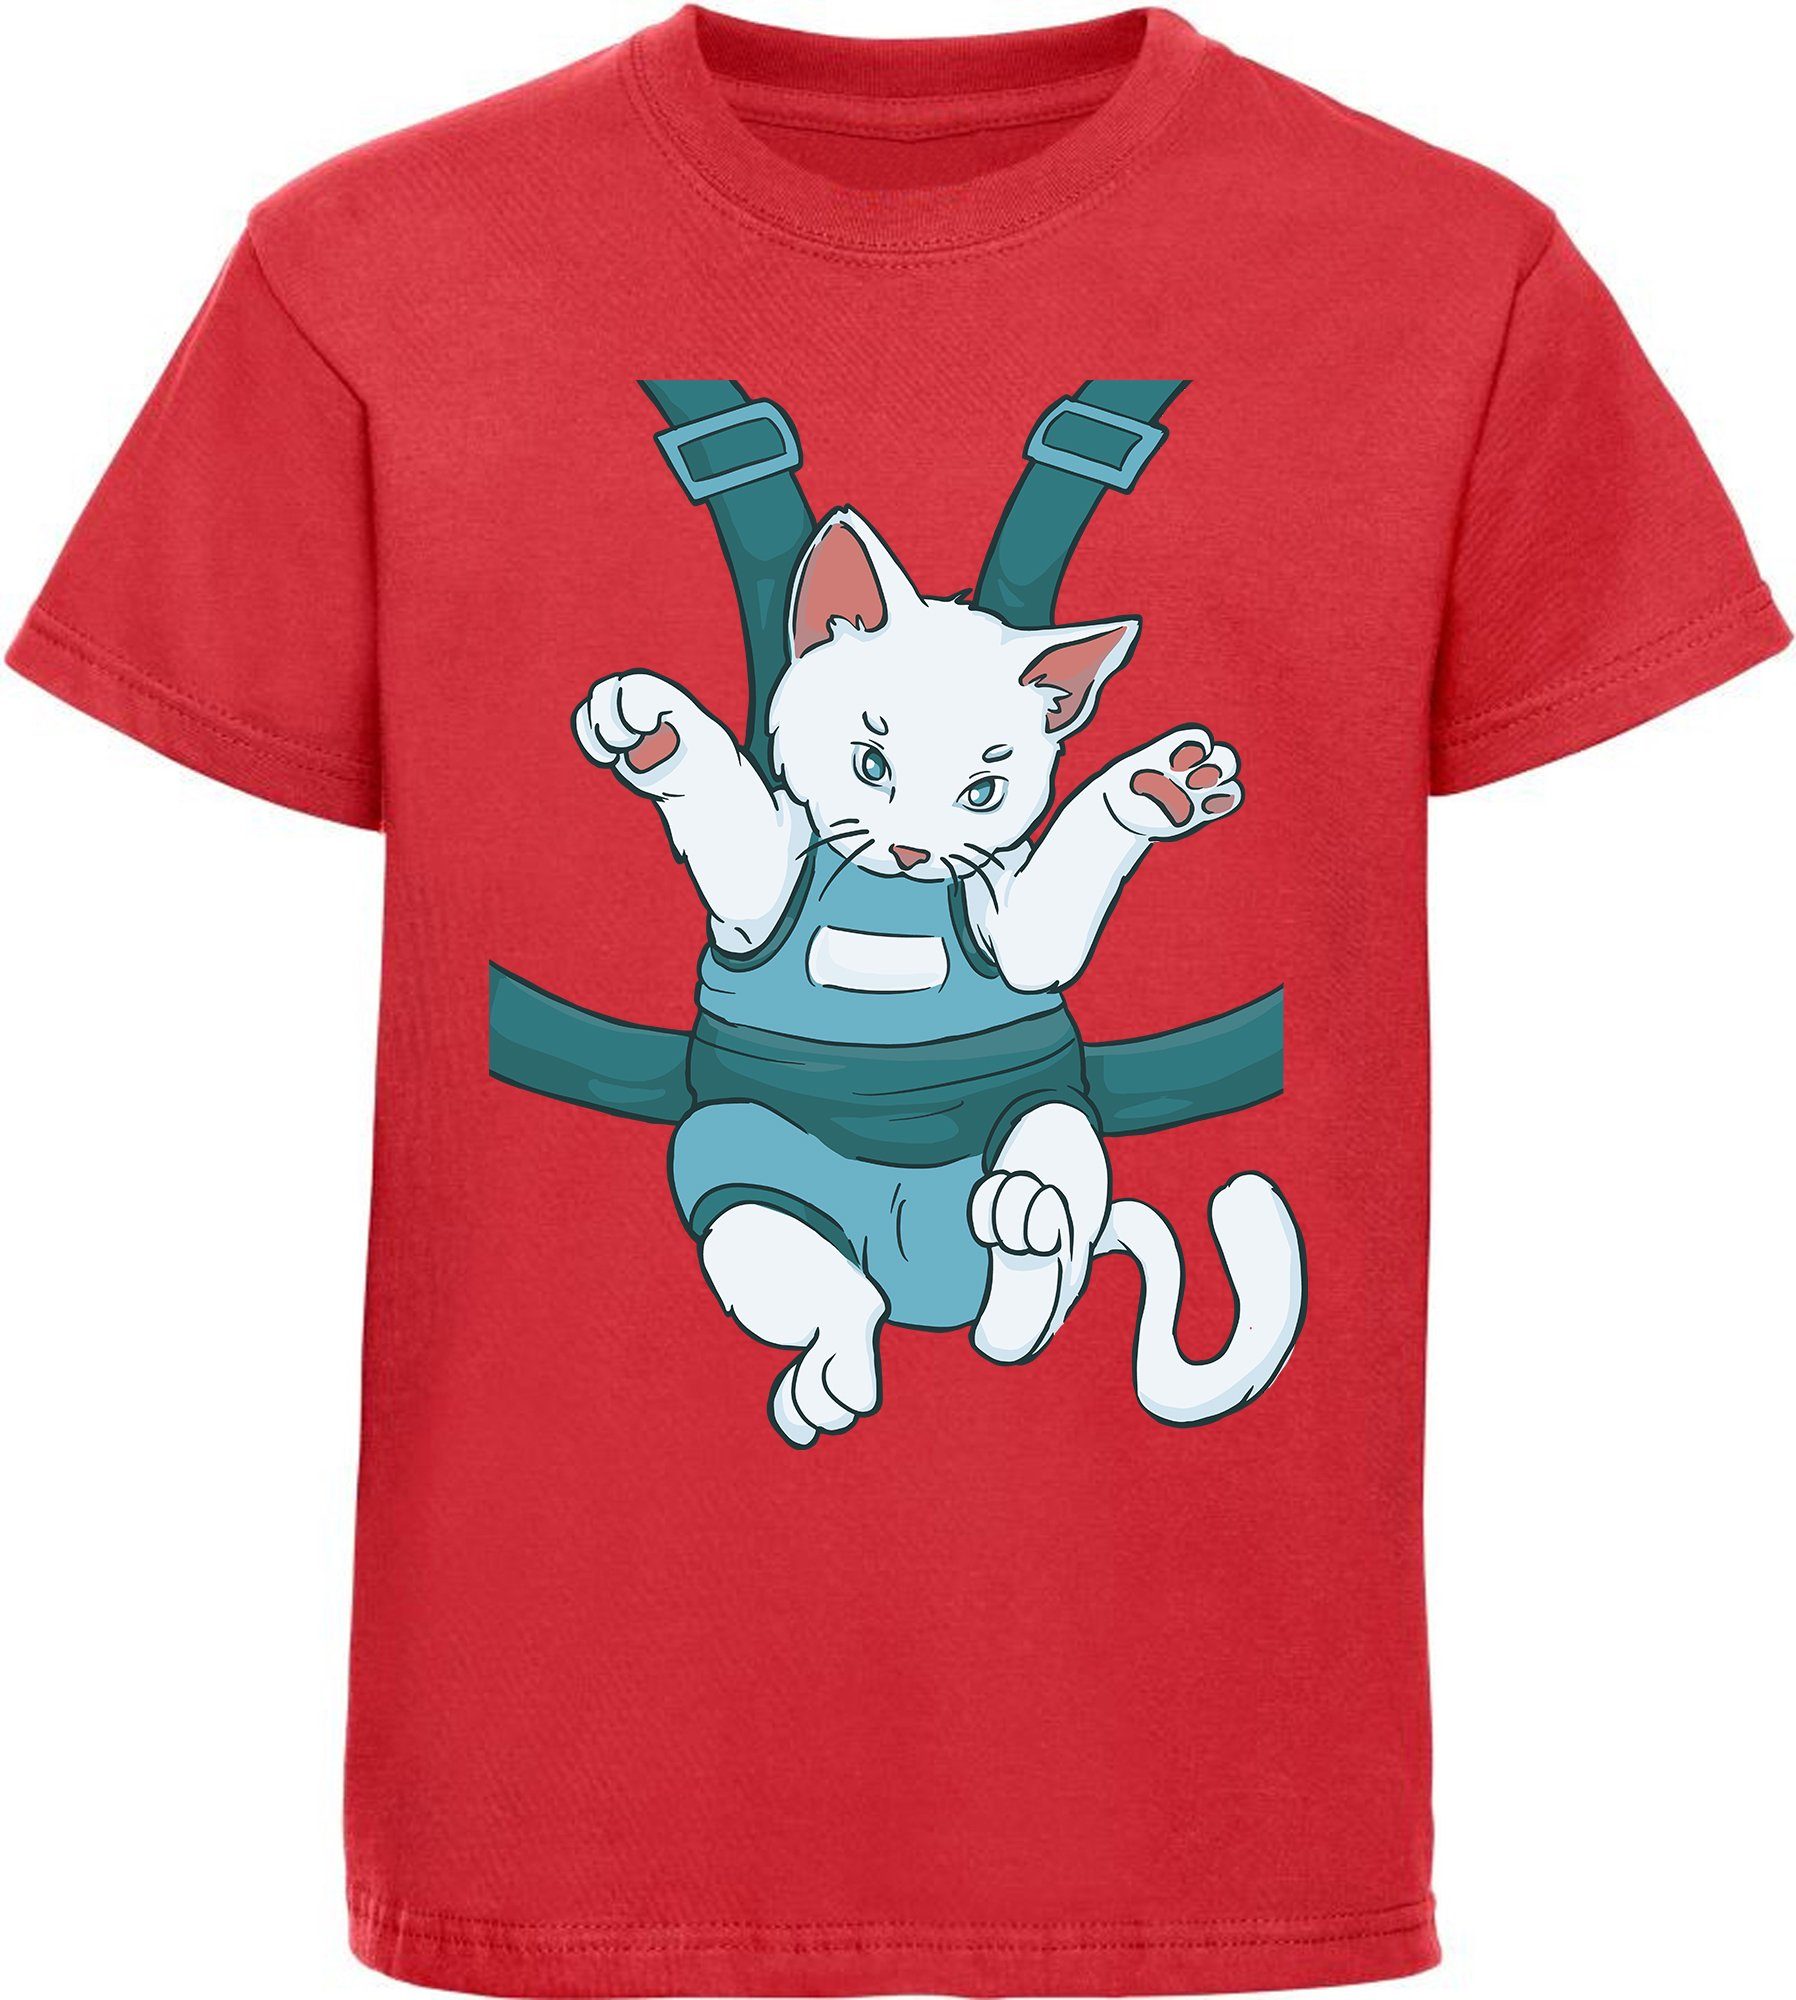 Print-Shirt weiß, T-Shirt Mädchen Katze schwarz, rot, MyDesign24 einem in Baumwollshirt i110 rosa, Katze, bedrucktes mit Tragegurt